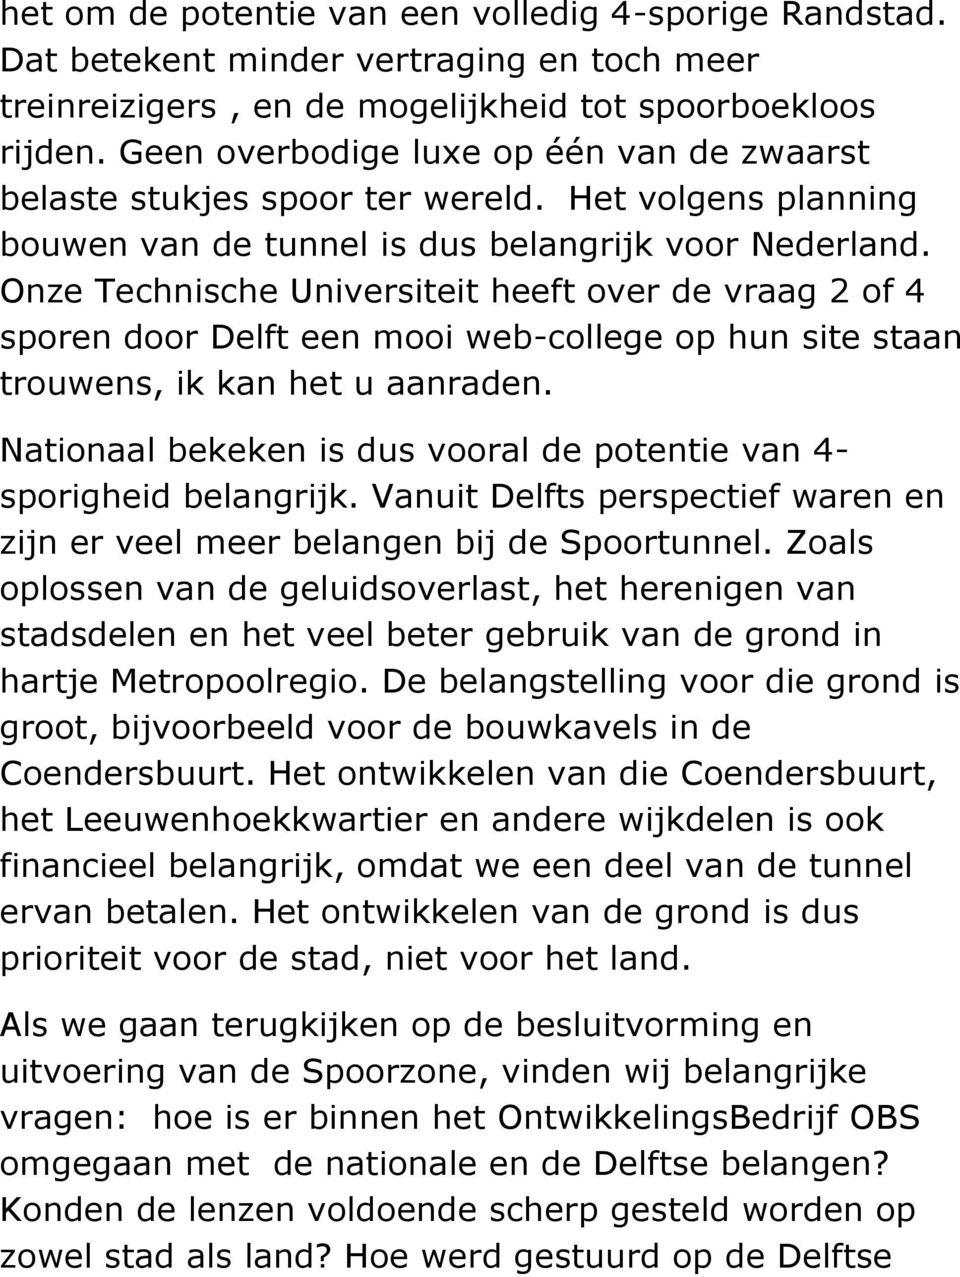 Onze Technische Universiteit heeft over de vraag 2 of 4 sporen door Delft een mooi web-college op hun site staan trouwens, ik kan het u aanraden.